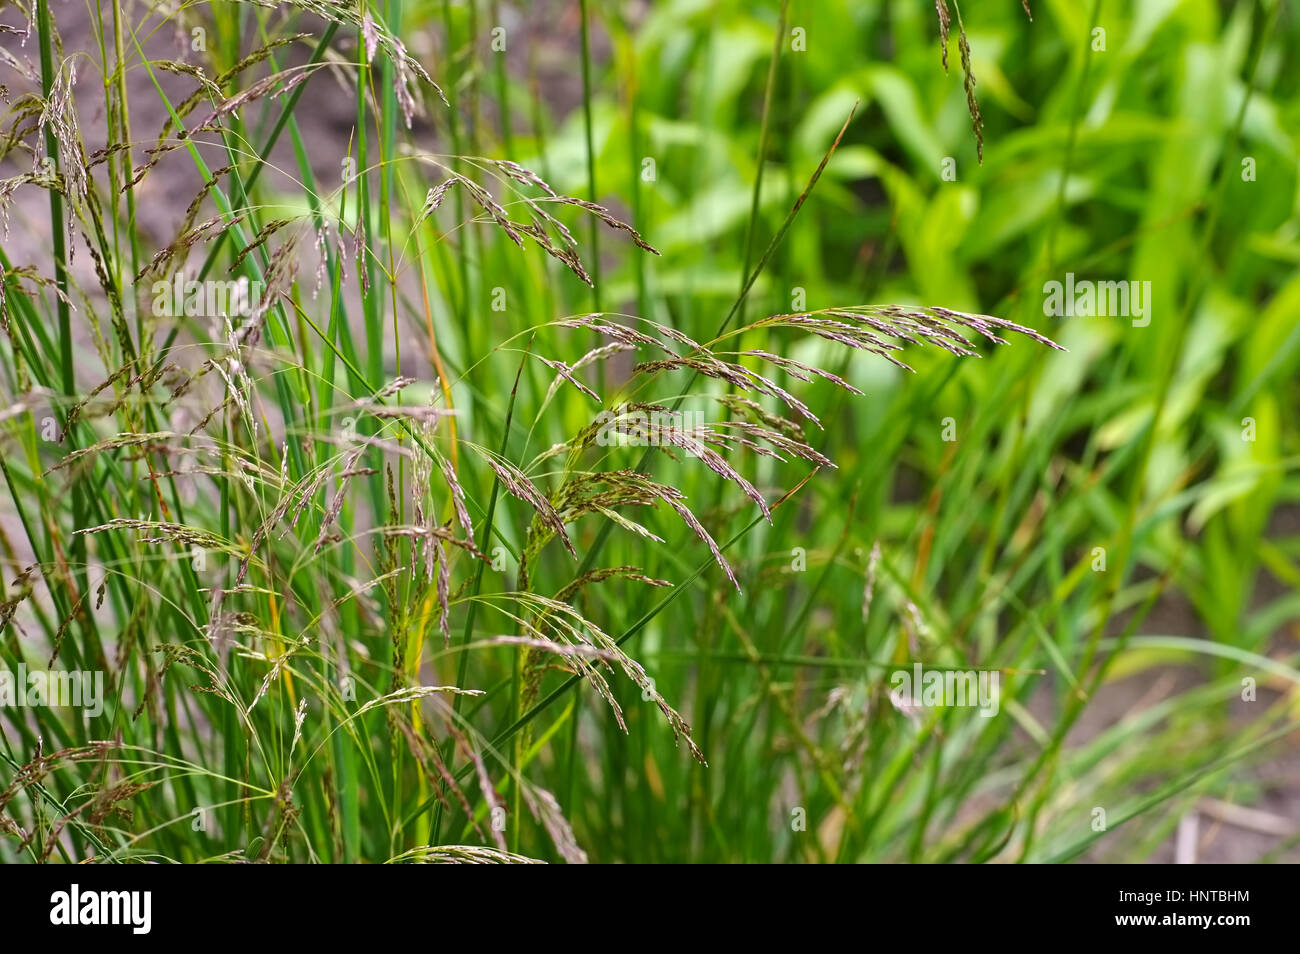 Rasen-Schmiele - Deschampsia cespitosa - tufted hairgrass, Deschampsia cespitosa in autumn Stock Photo